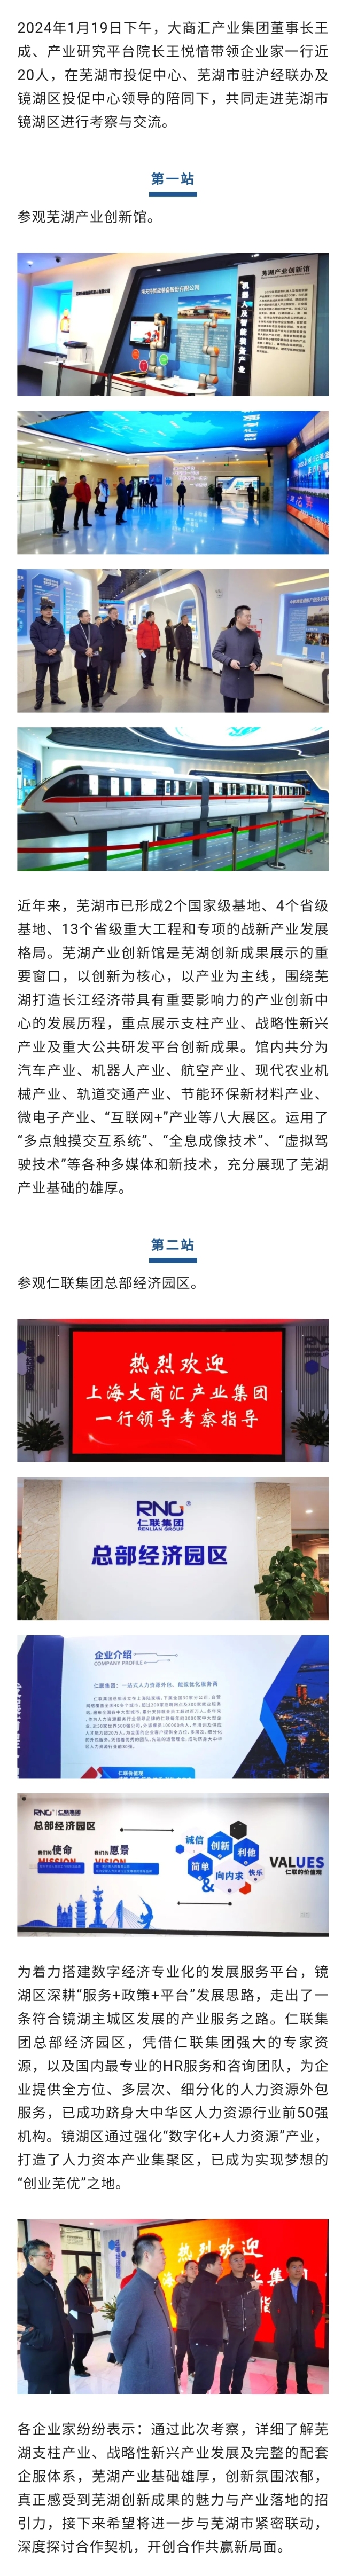 大商汇组织上海企业考察团赴芜湖市镜湖区考察活动顺利进行